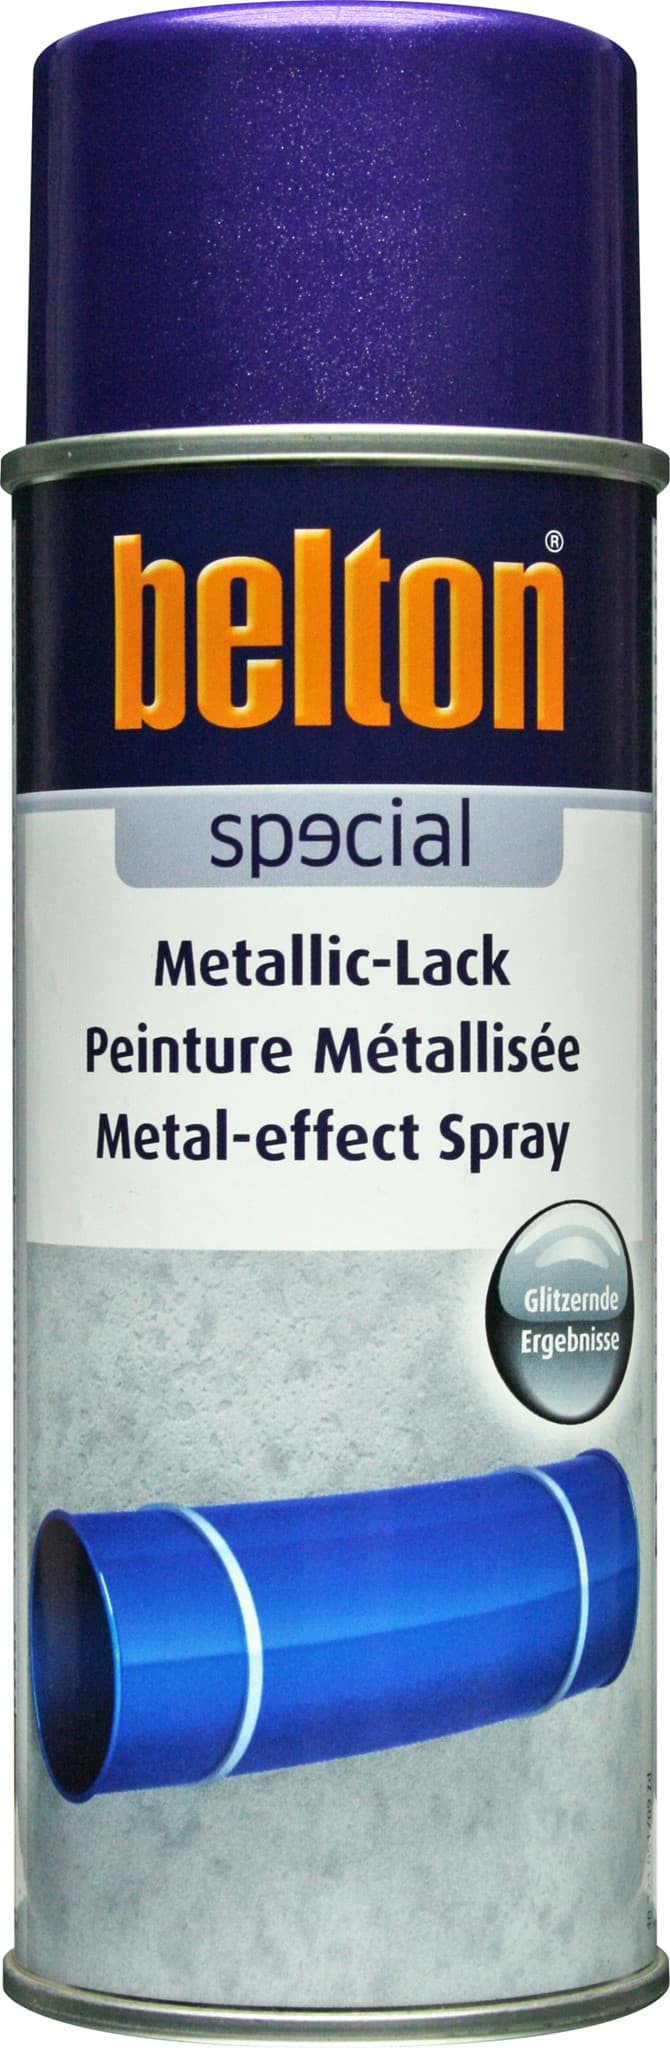 Afbeelding van Belton Special Lackspray violett metallic